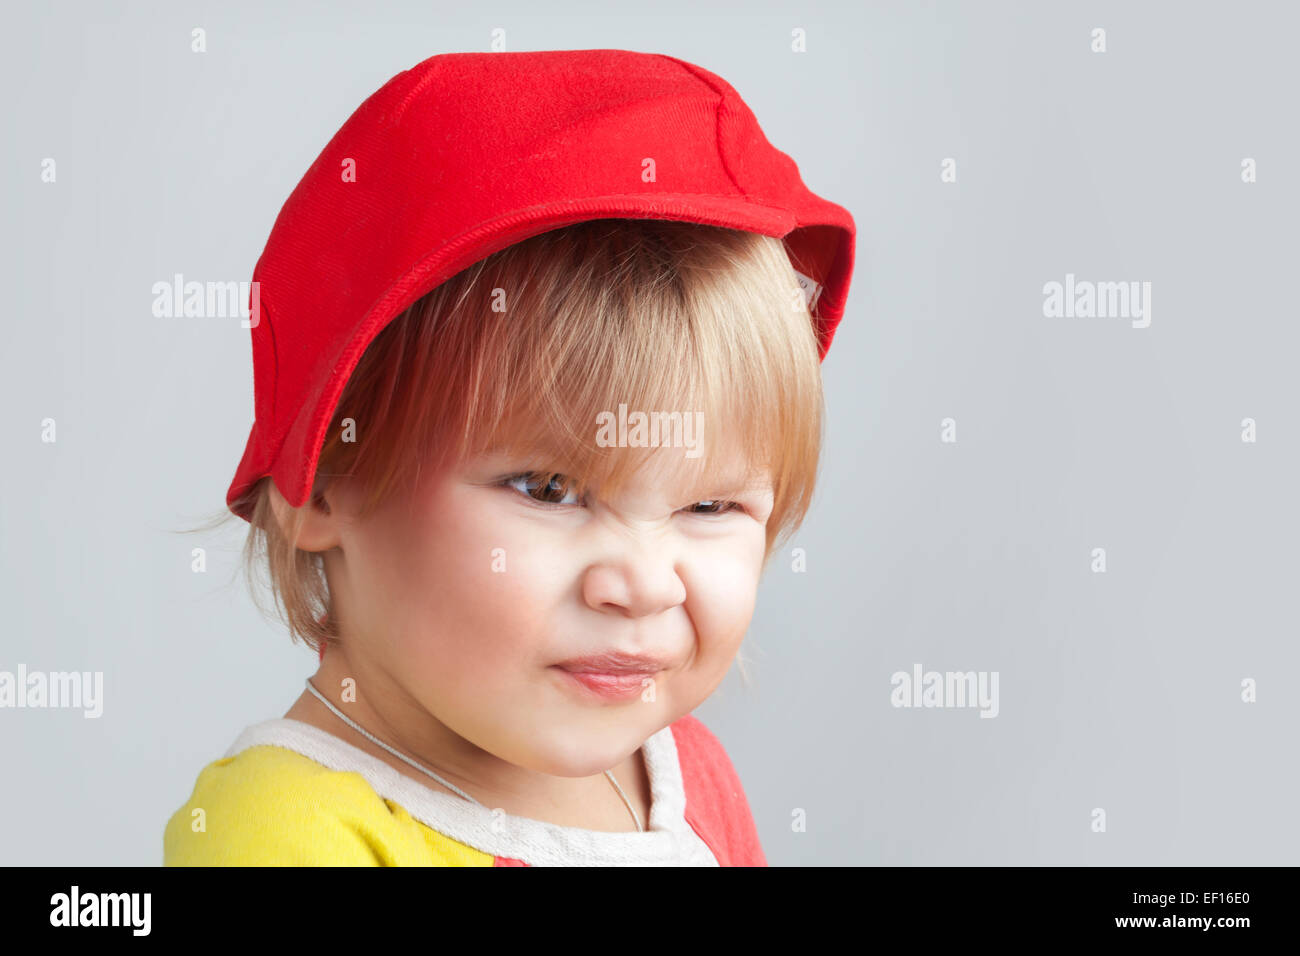 Studioportrait lustig lächelndes Baby girl in rote Baseballmütze über graue Wand Hintergrund Stockfoto